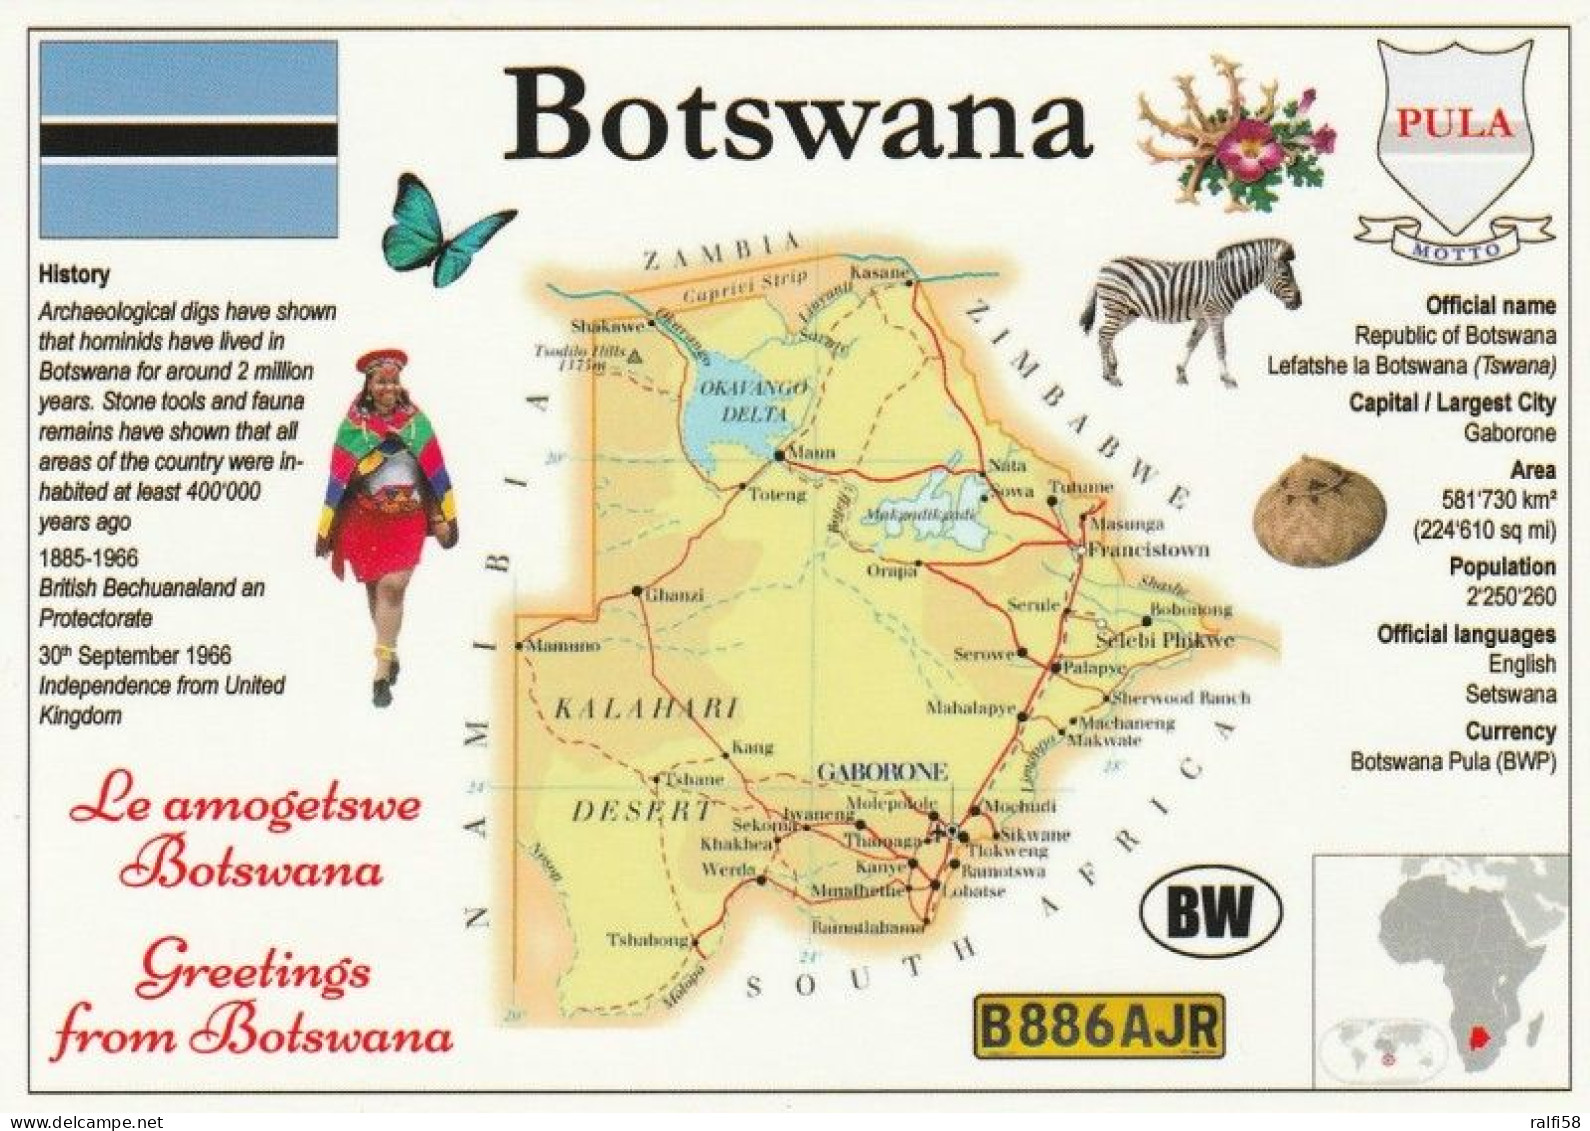 1 Map Of Botswana * 1 Ansichtskarte Mit Der Landkarte Von Botswana, Informationen Und Der Flagge Des Landes * - Cartes Géographiques